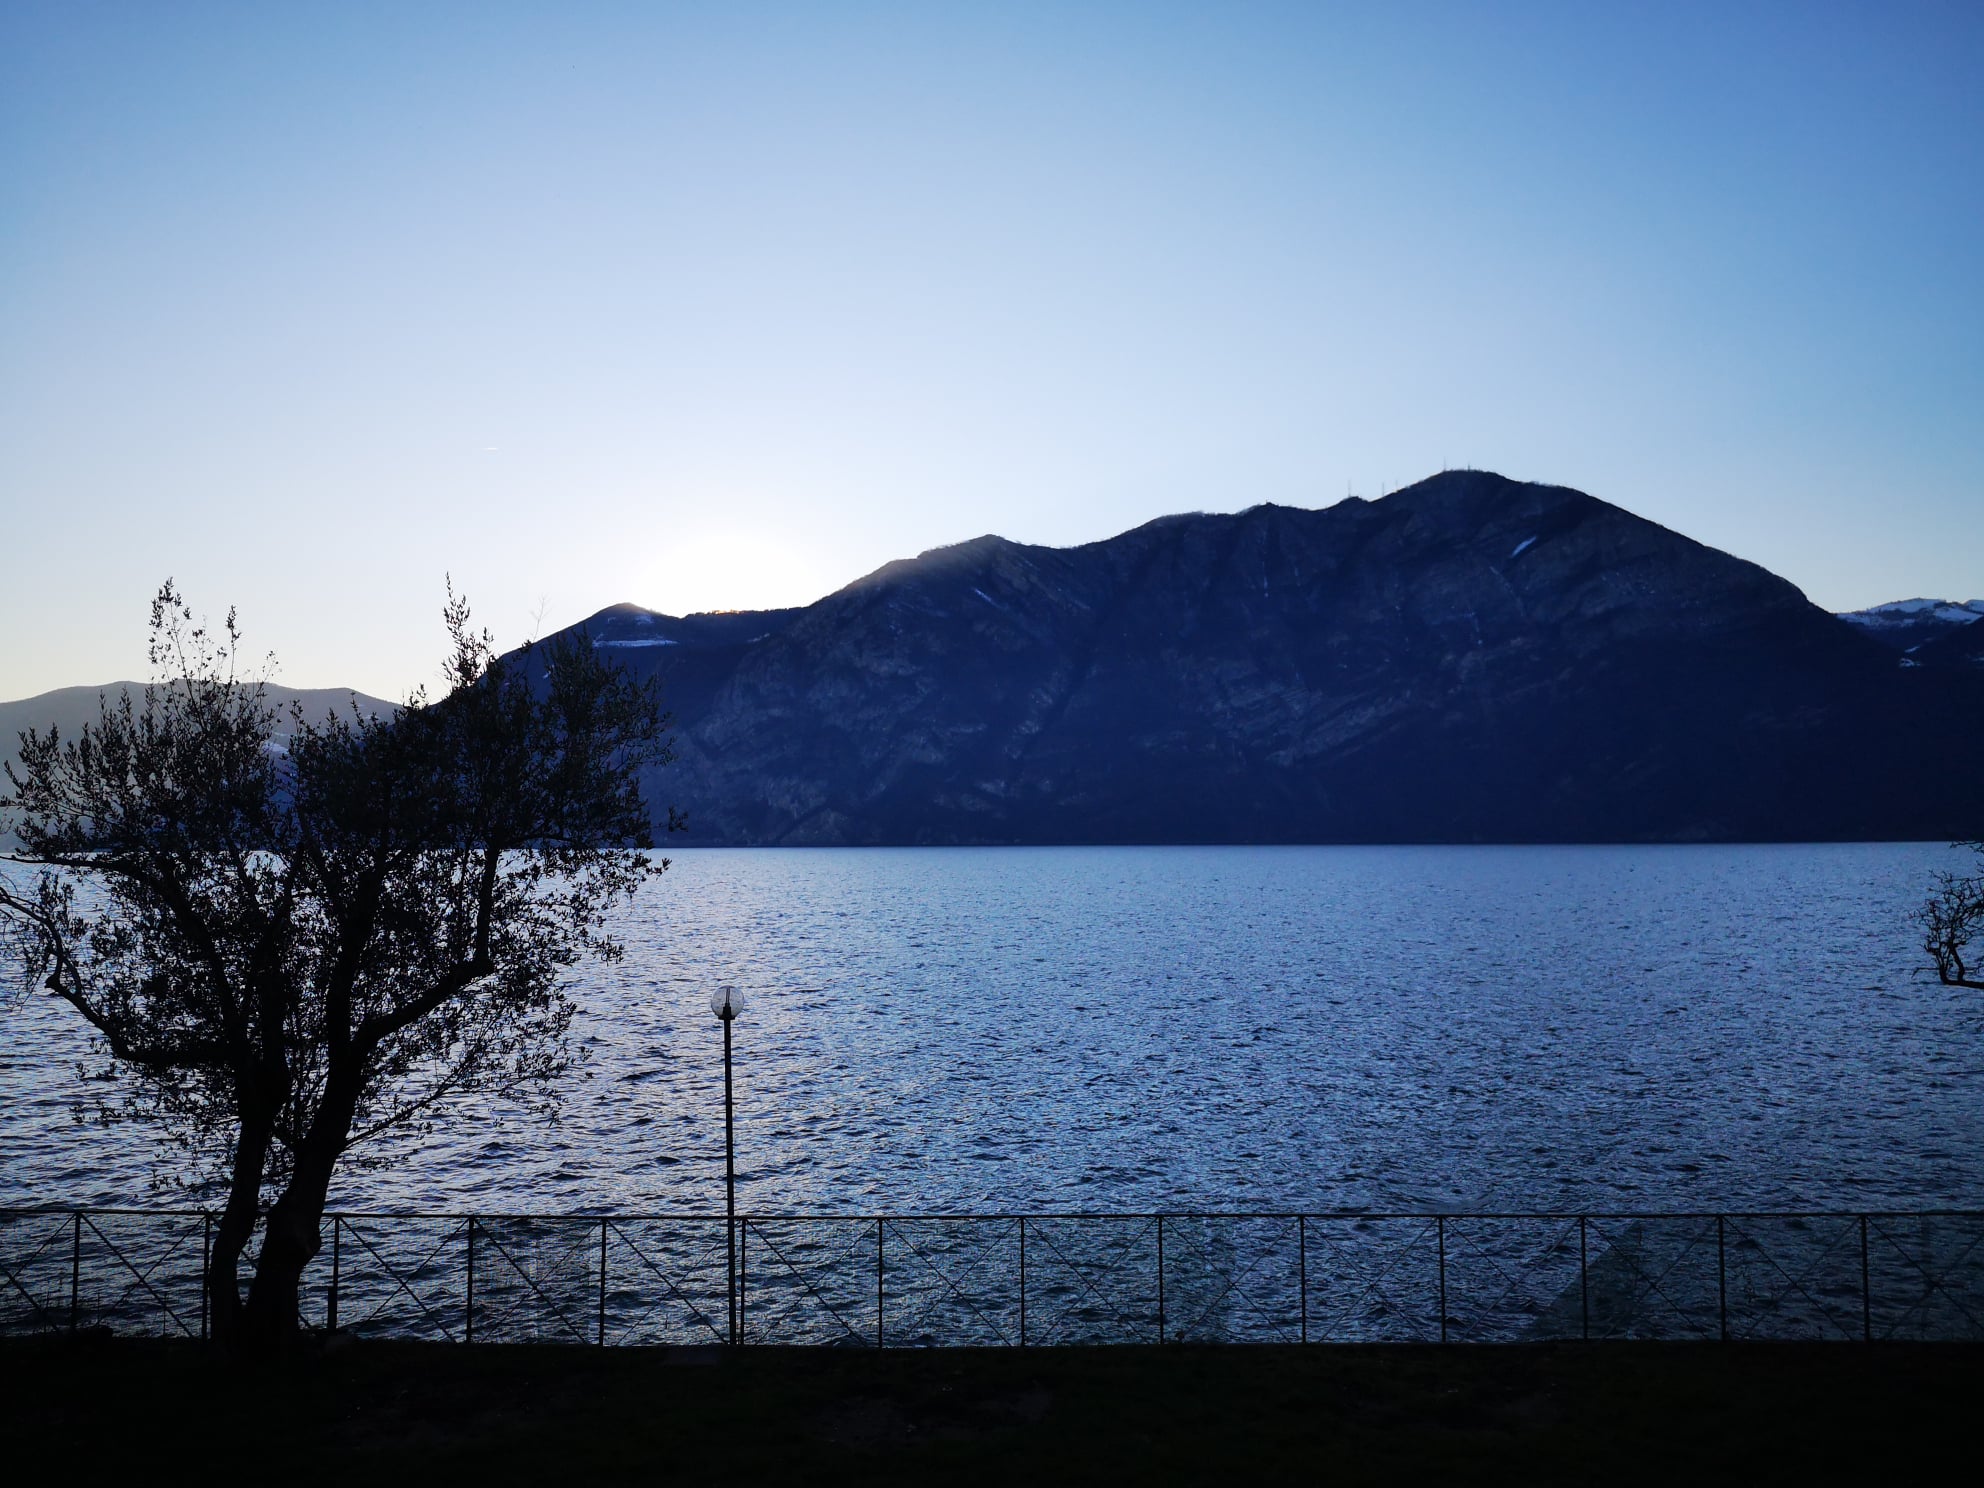 PB Lake Iseo, Italy 2020 & 2021 Summary Reports